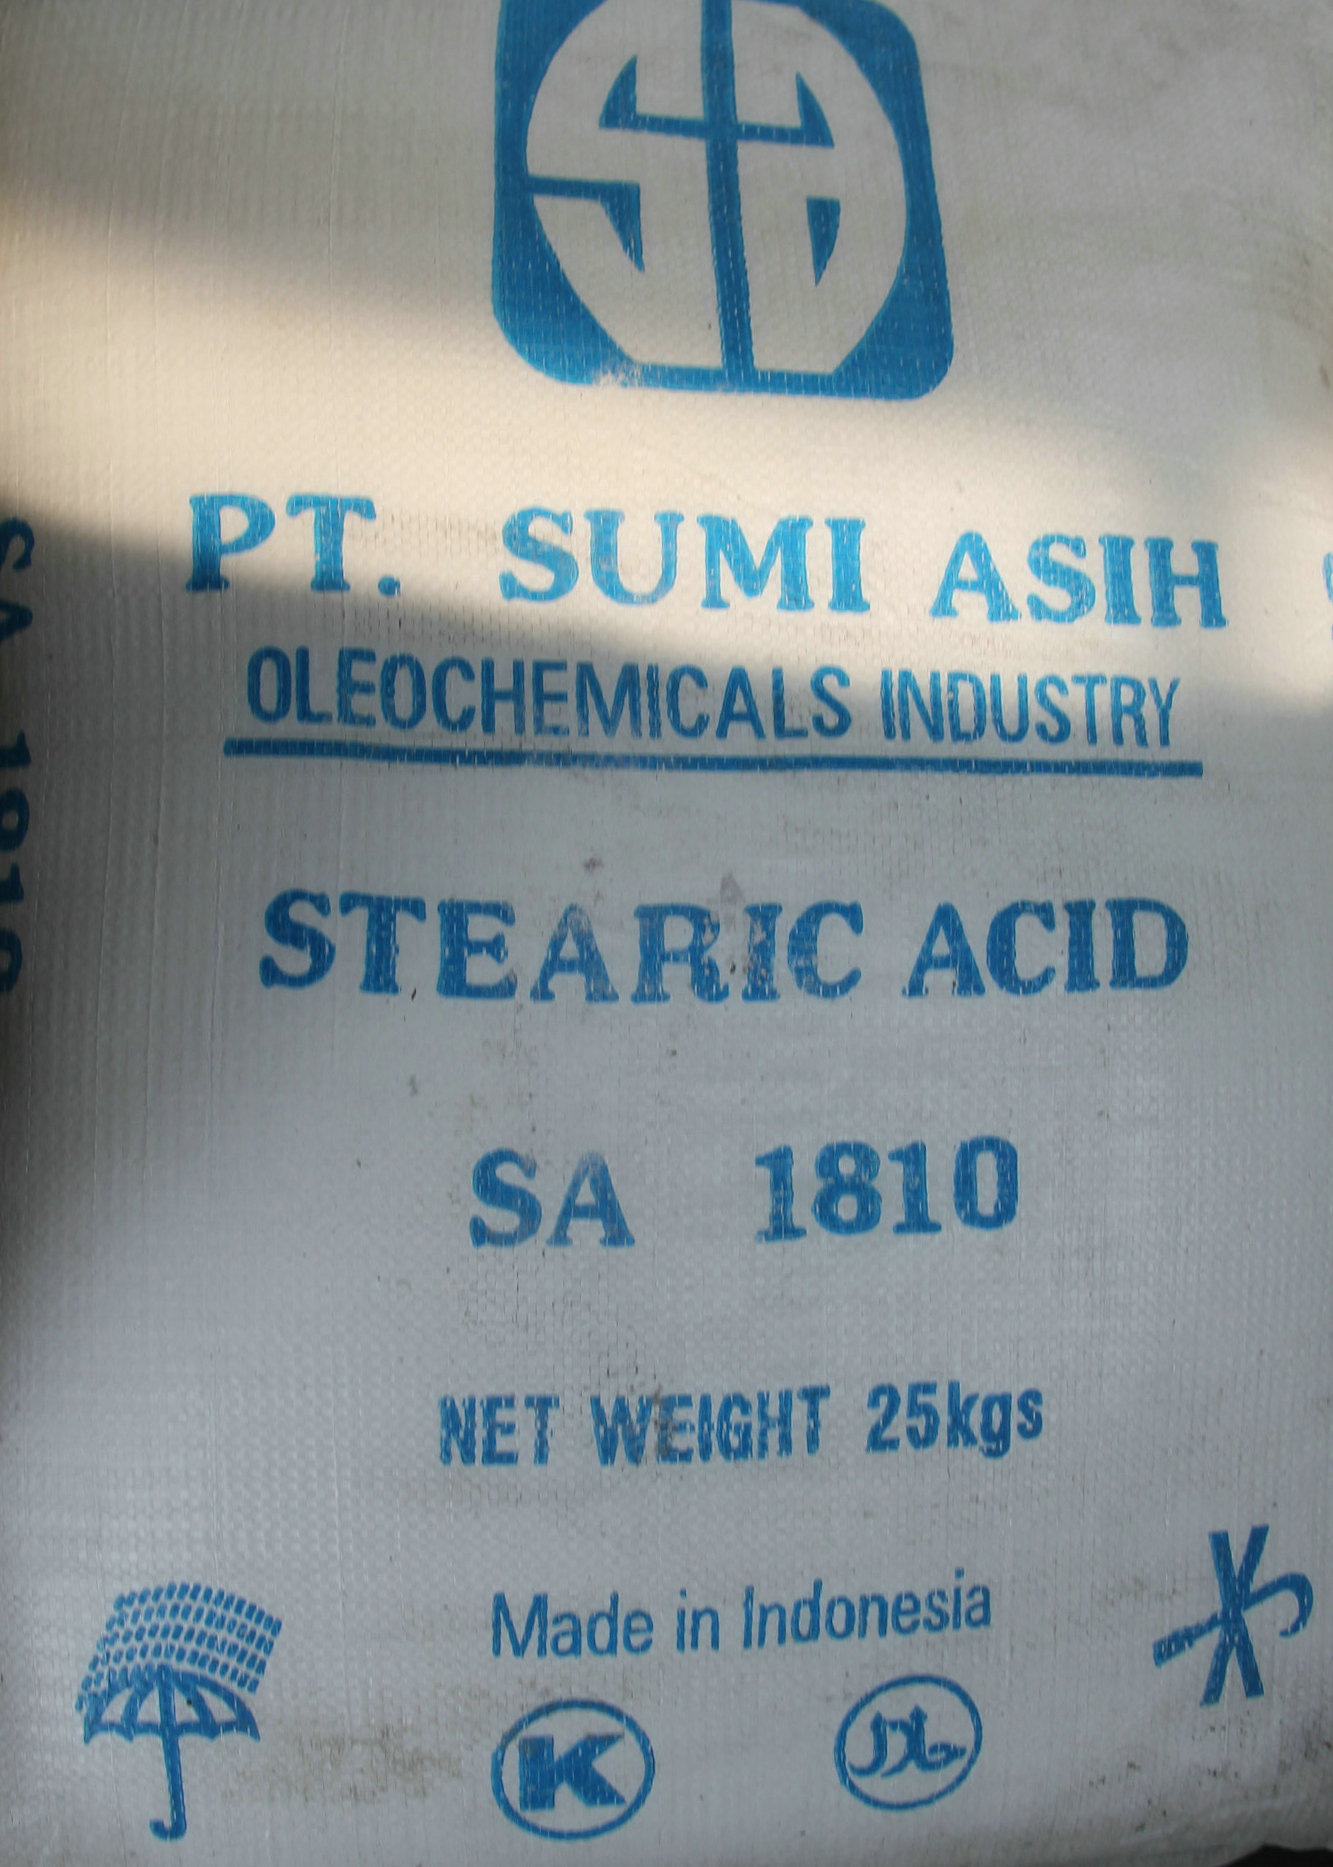 优质供应 橡胶化活性剂 硬脂酸1801 印尼1801硬脂酸 用于橡胶制品等行业